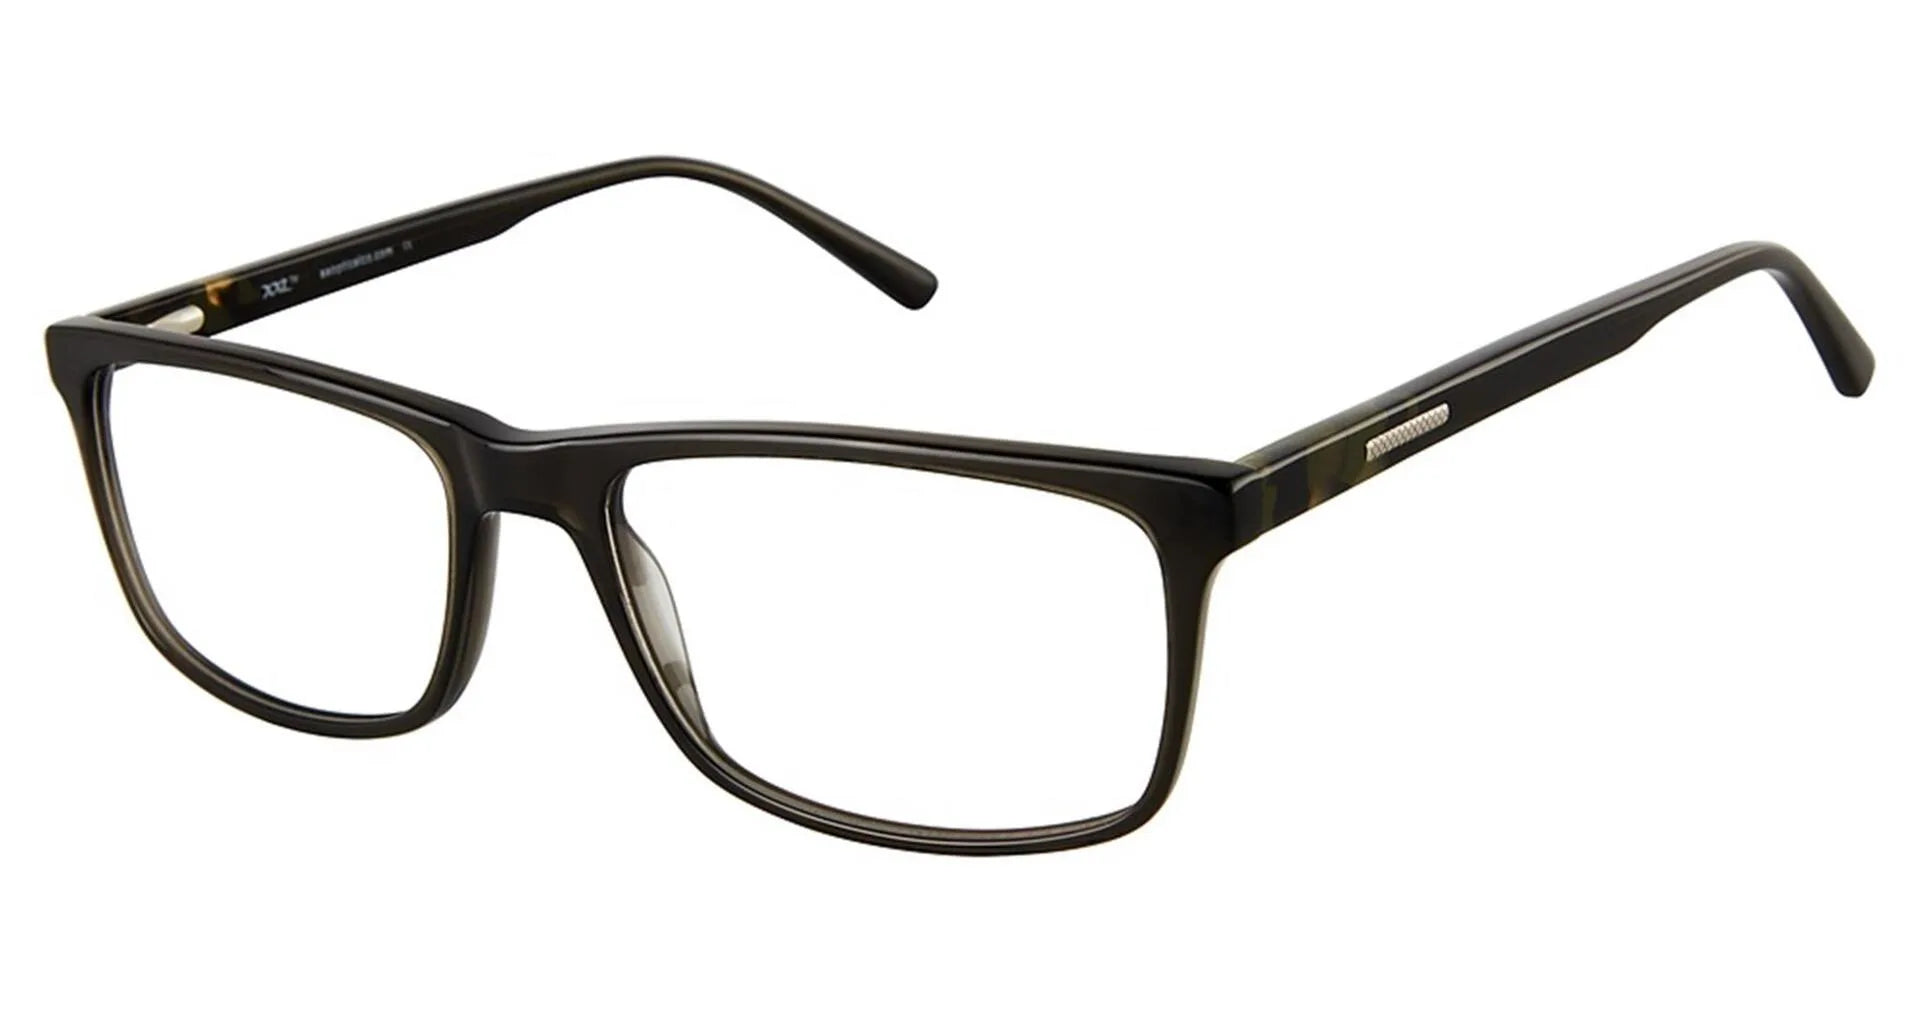 XXL Eyewear Hawkeye Eyeglasses Green